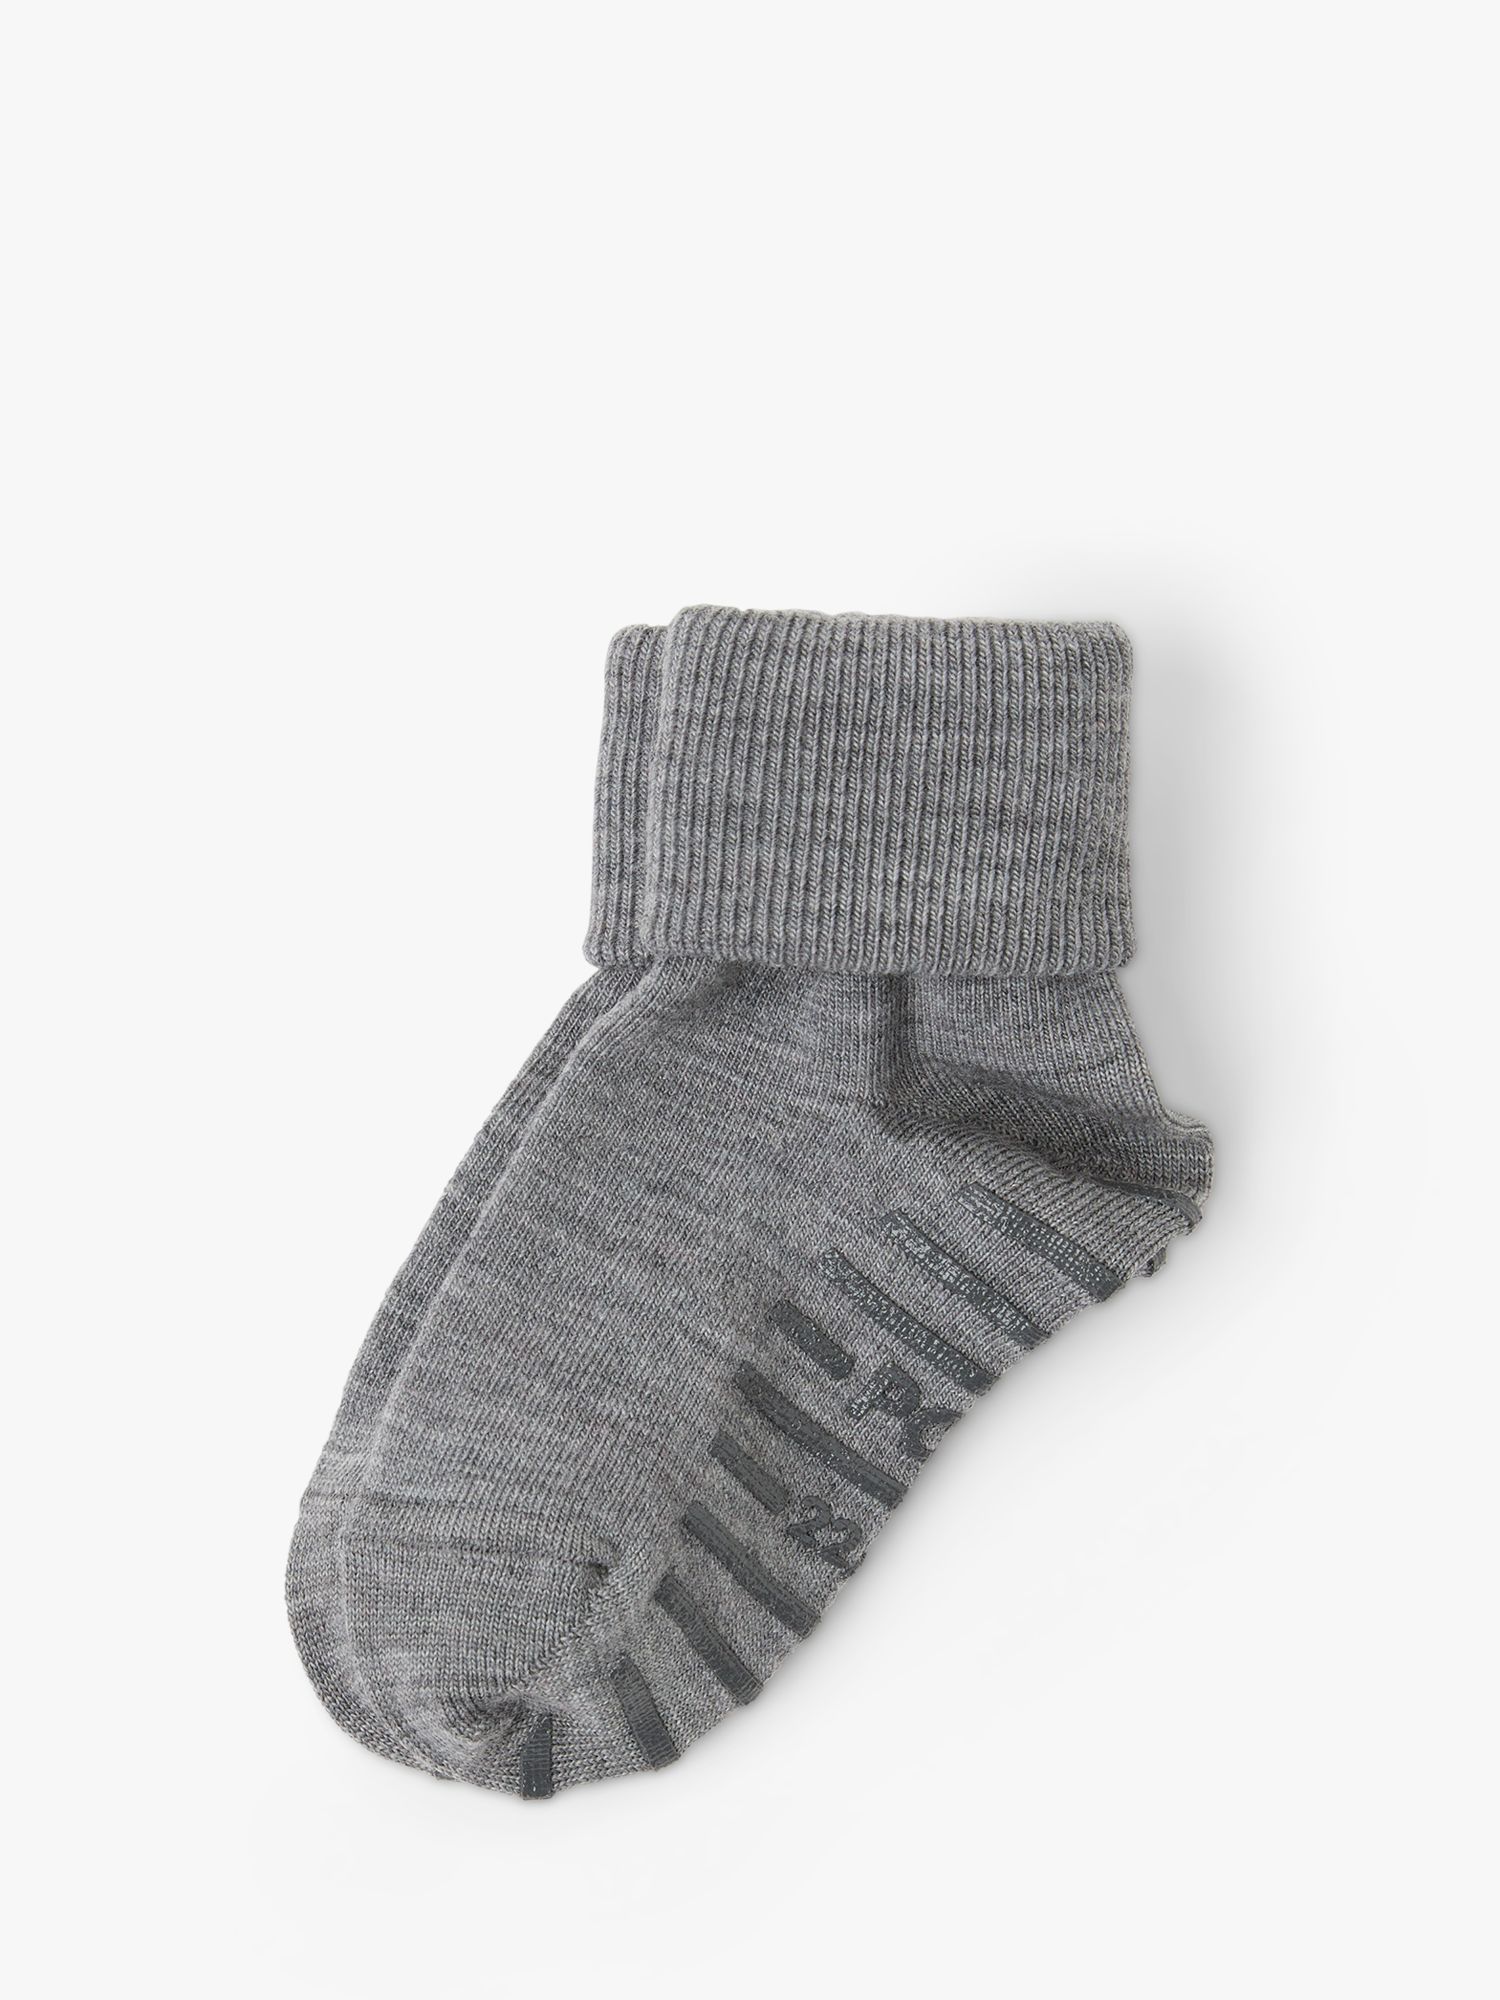 Детские носки-тапочки из смеси мериноса Polarn O. Pyret, серый капор из шерсти мериноса yutti 020 какао o s размер